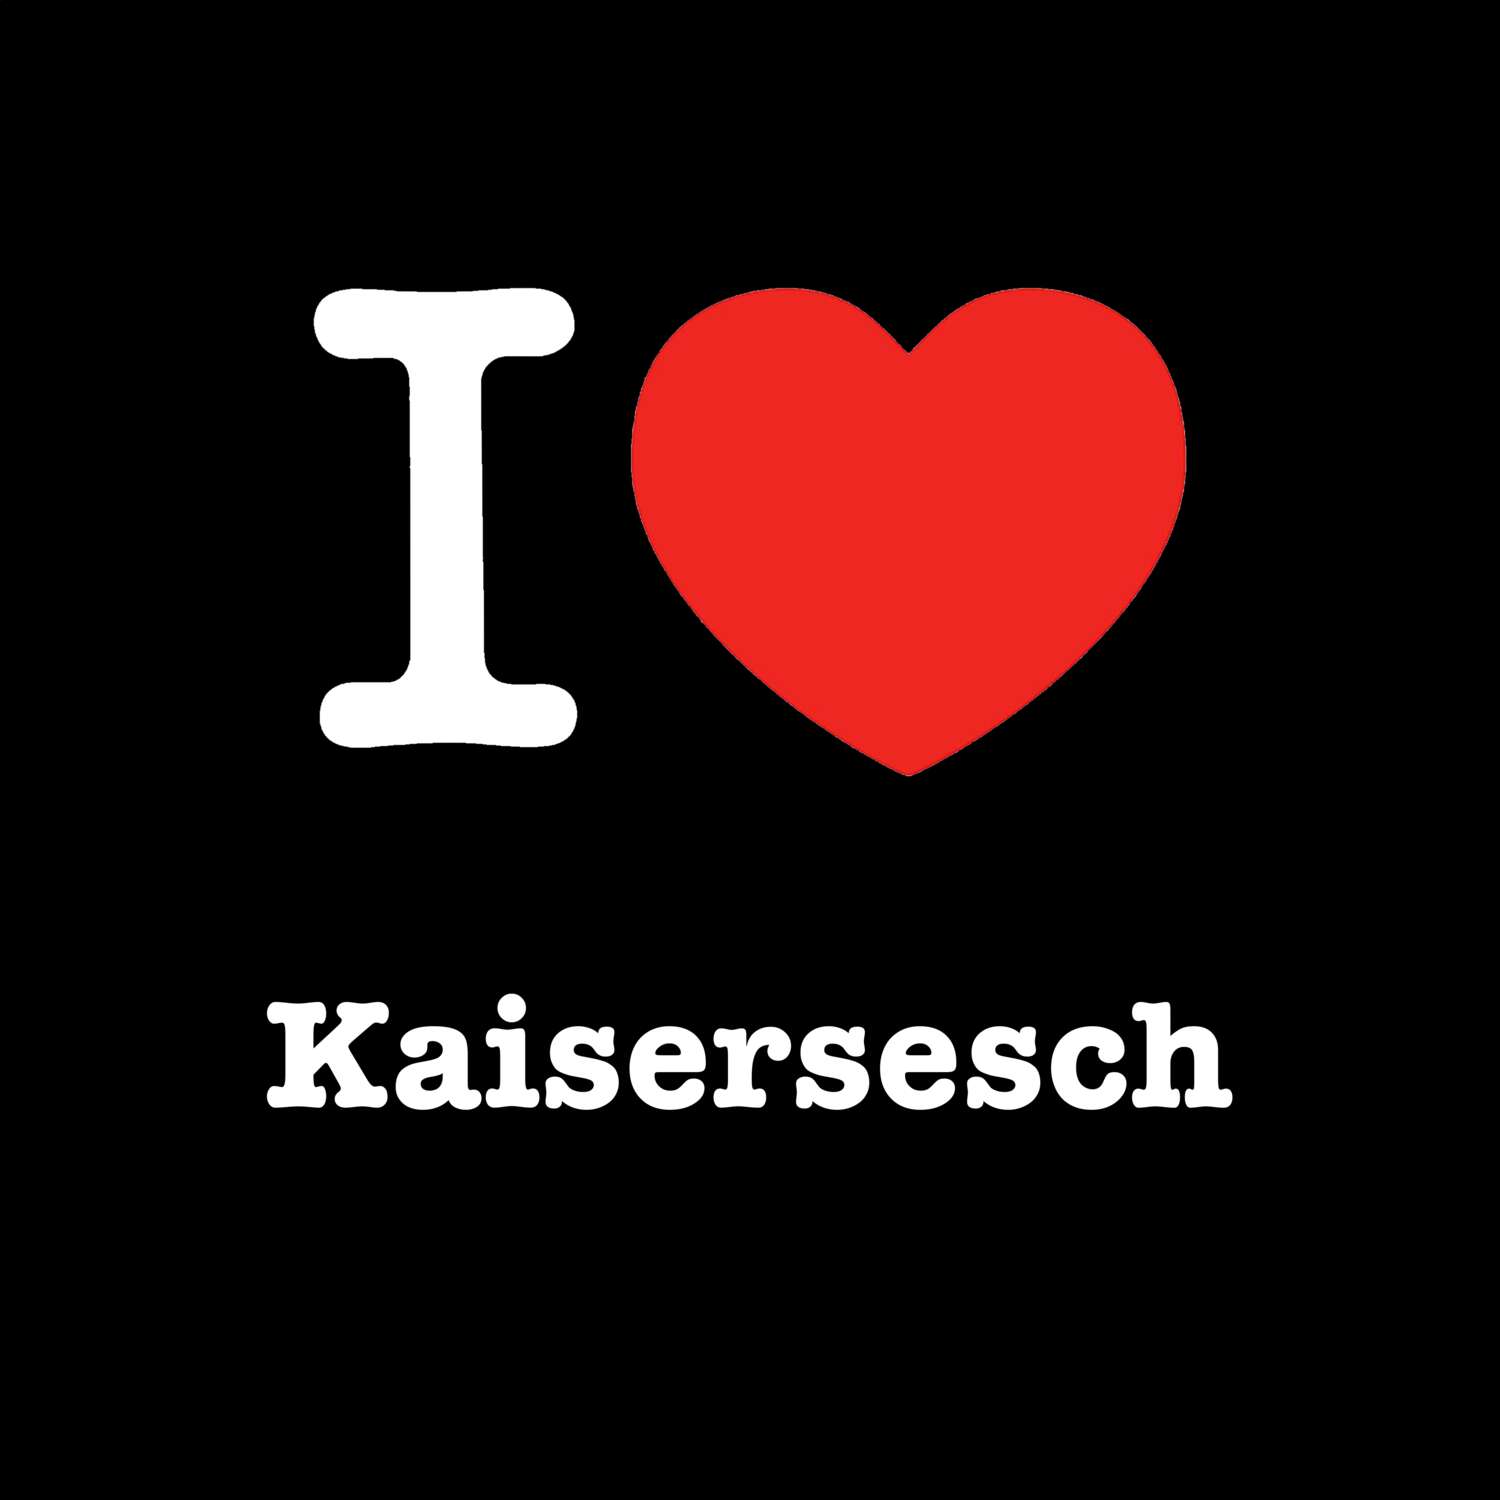 Kaisersesch T-Shirt »I love«